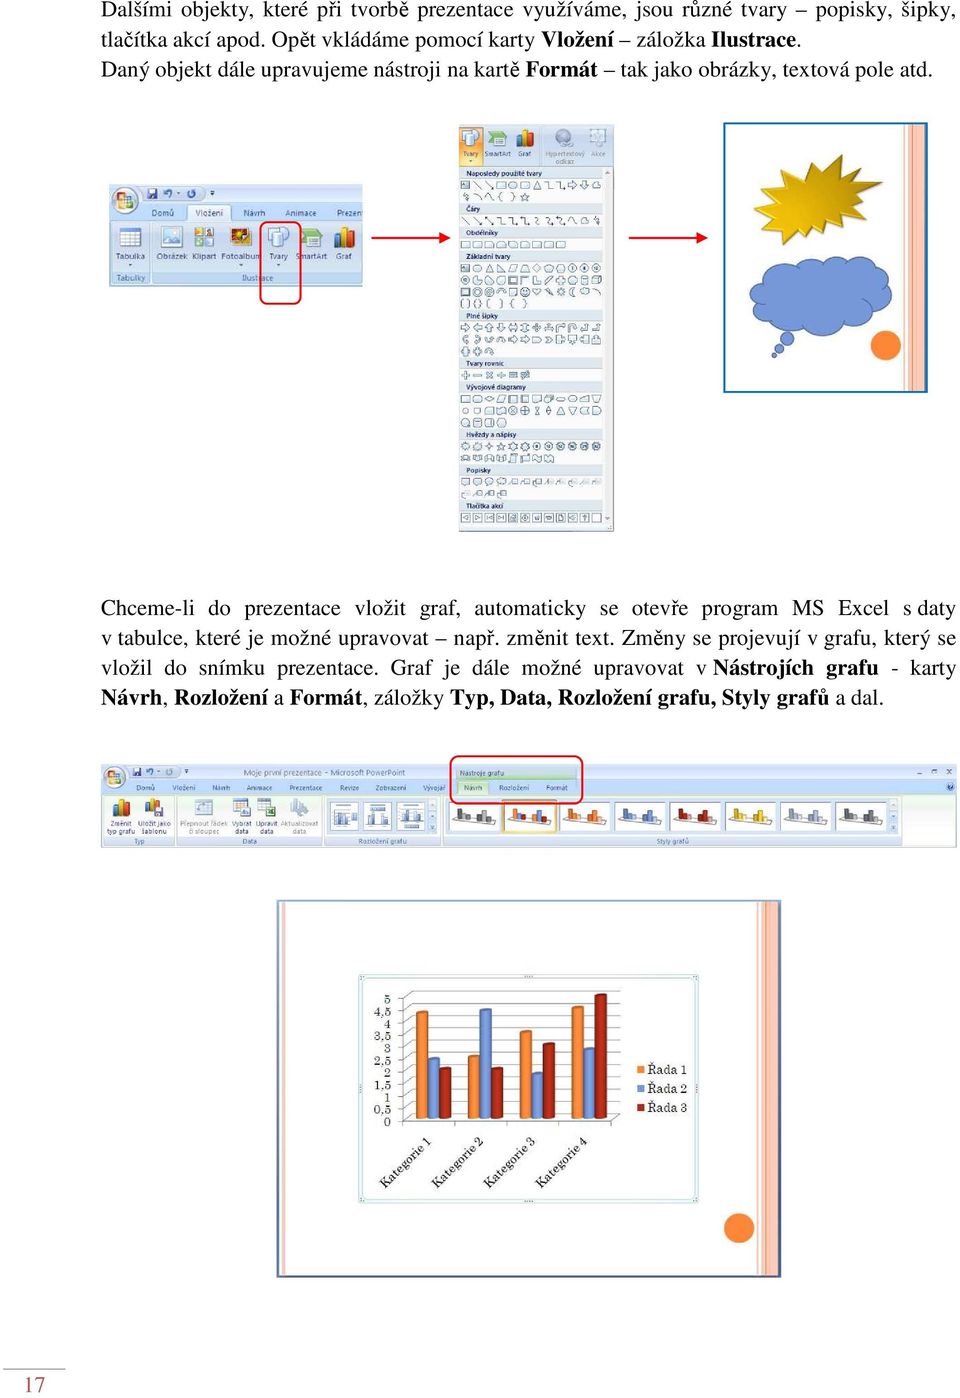 Chceme-li do prezentace vložit graf, automaticky se otevře program MS Excel s daty v tabulce, které je možné upravovat např. změnit text.